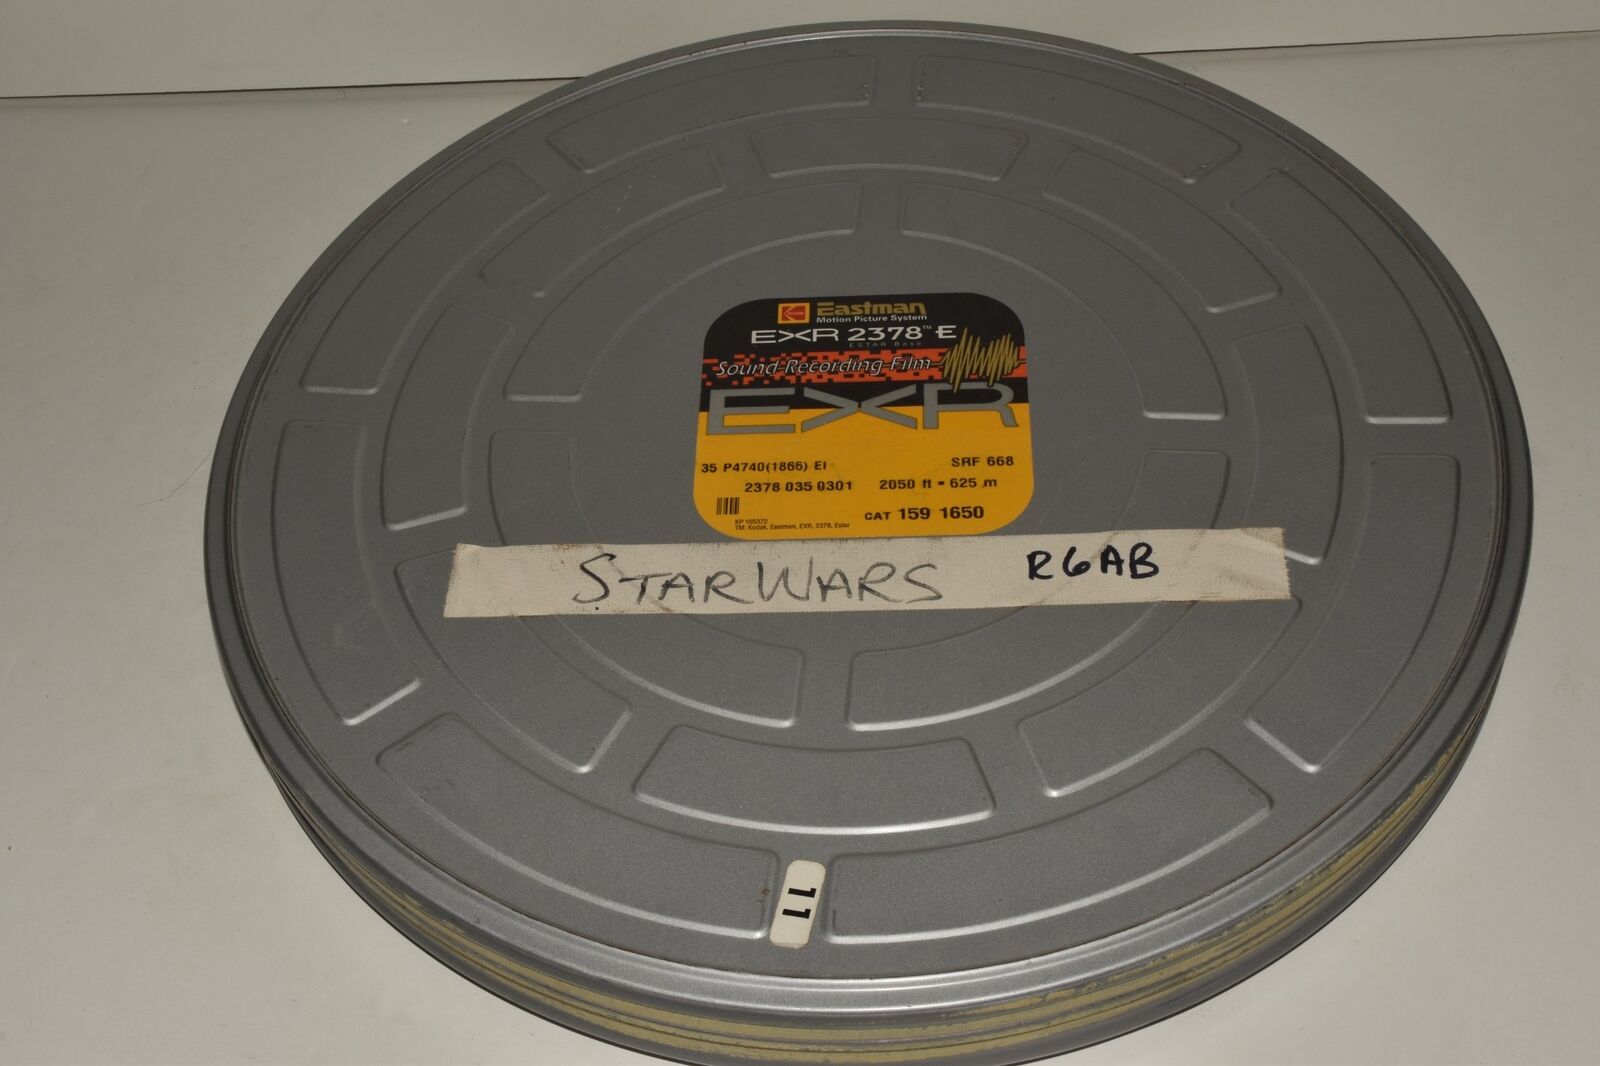 STAR WARS VINTAGE 1977 35MM FILM REEL 6AB - ORIGINAL MOVIE NOT TRAILER  (WVK44)